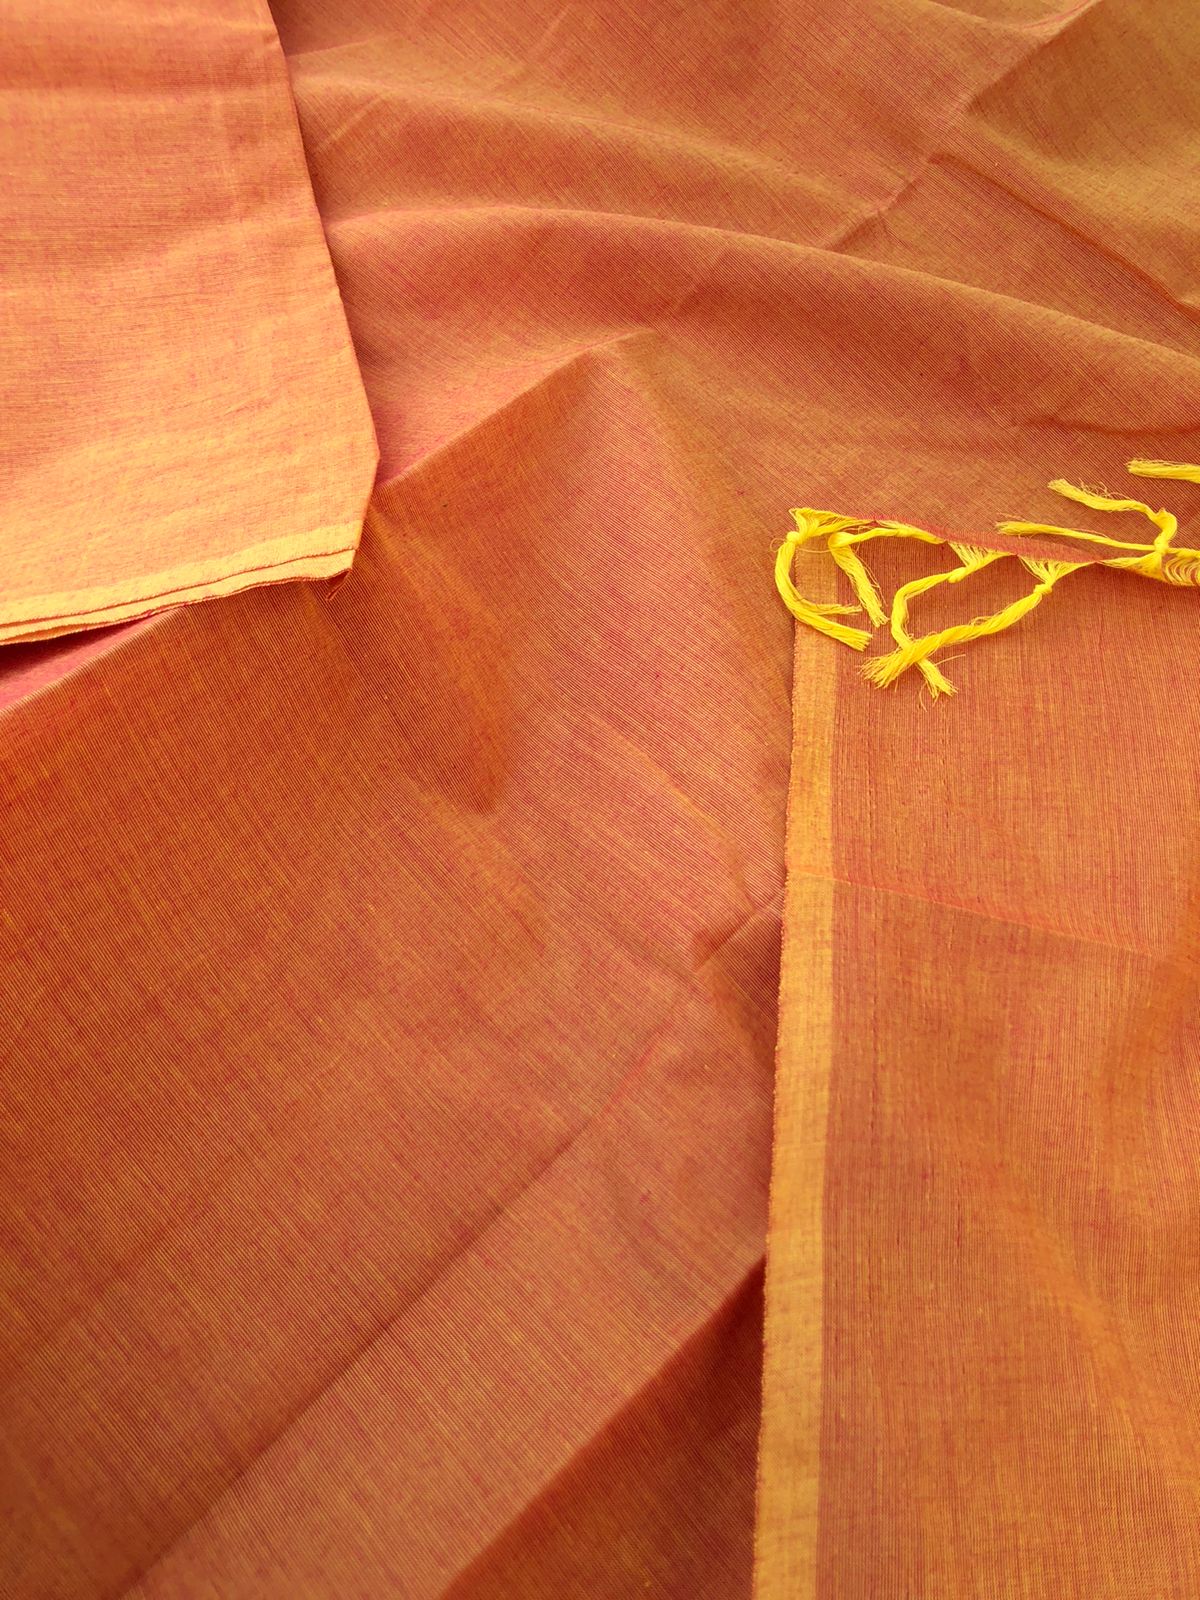 7 to 11 - colours of full plain cotton sarees - sun set yellow and orange